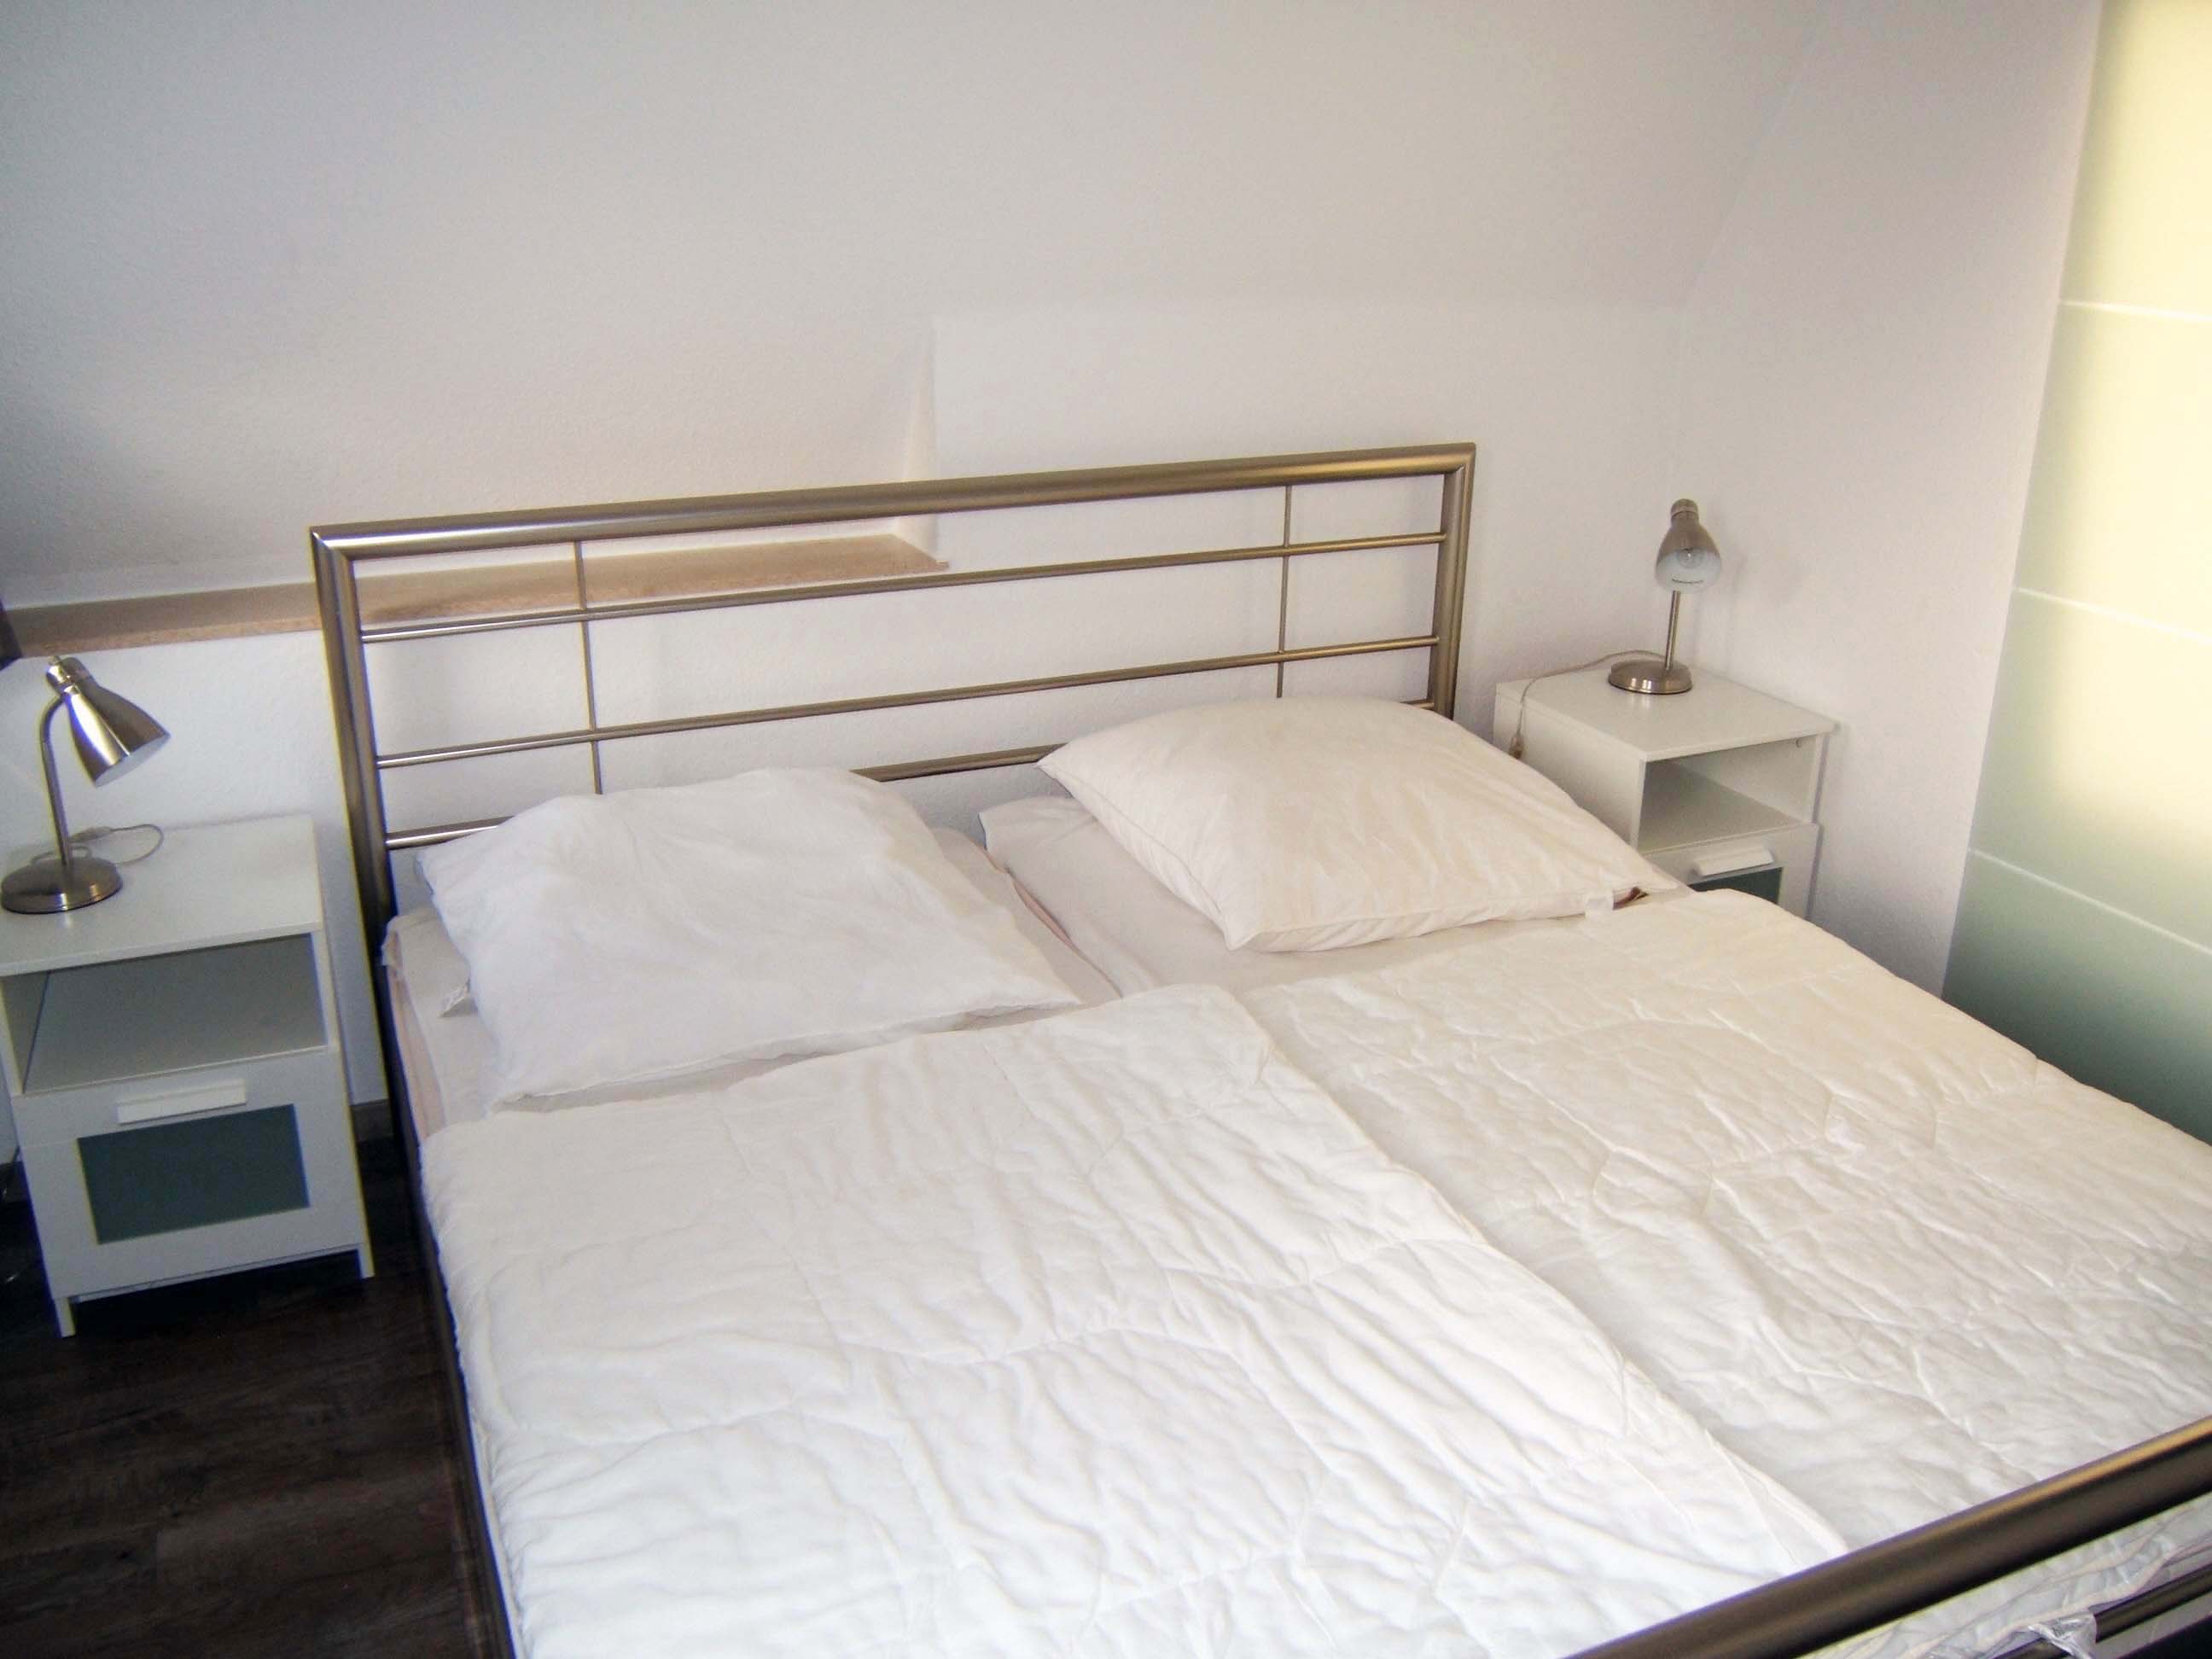 1 Schlafzimmer im unteren Bereich mit einem Doppelbett 1,80 x 2,00 Meter (2 Matratzen)